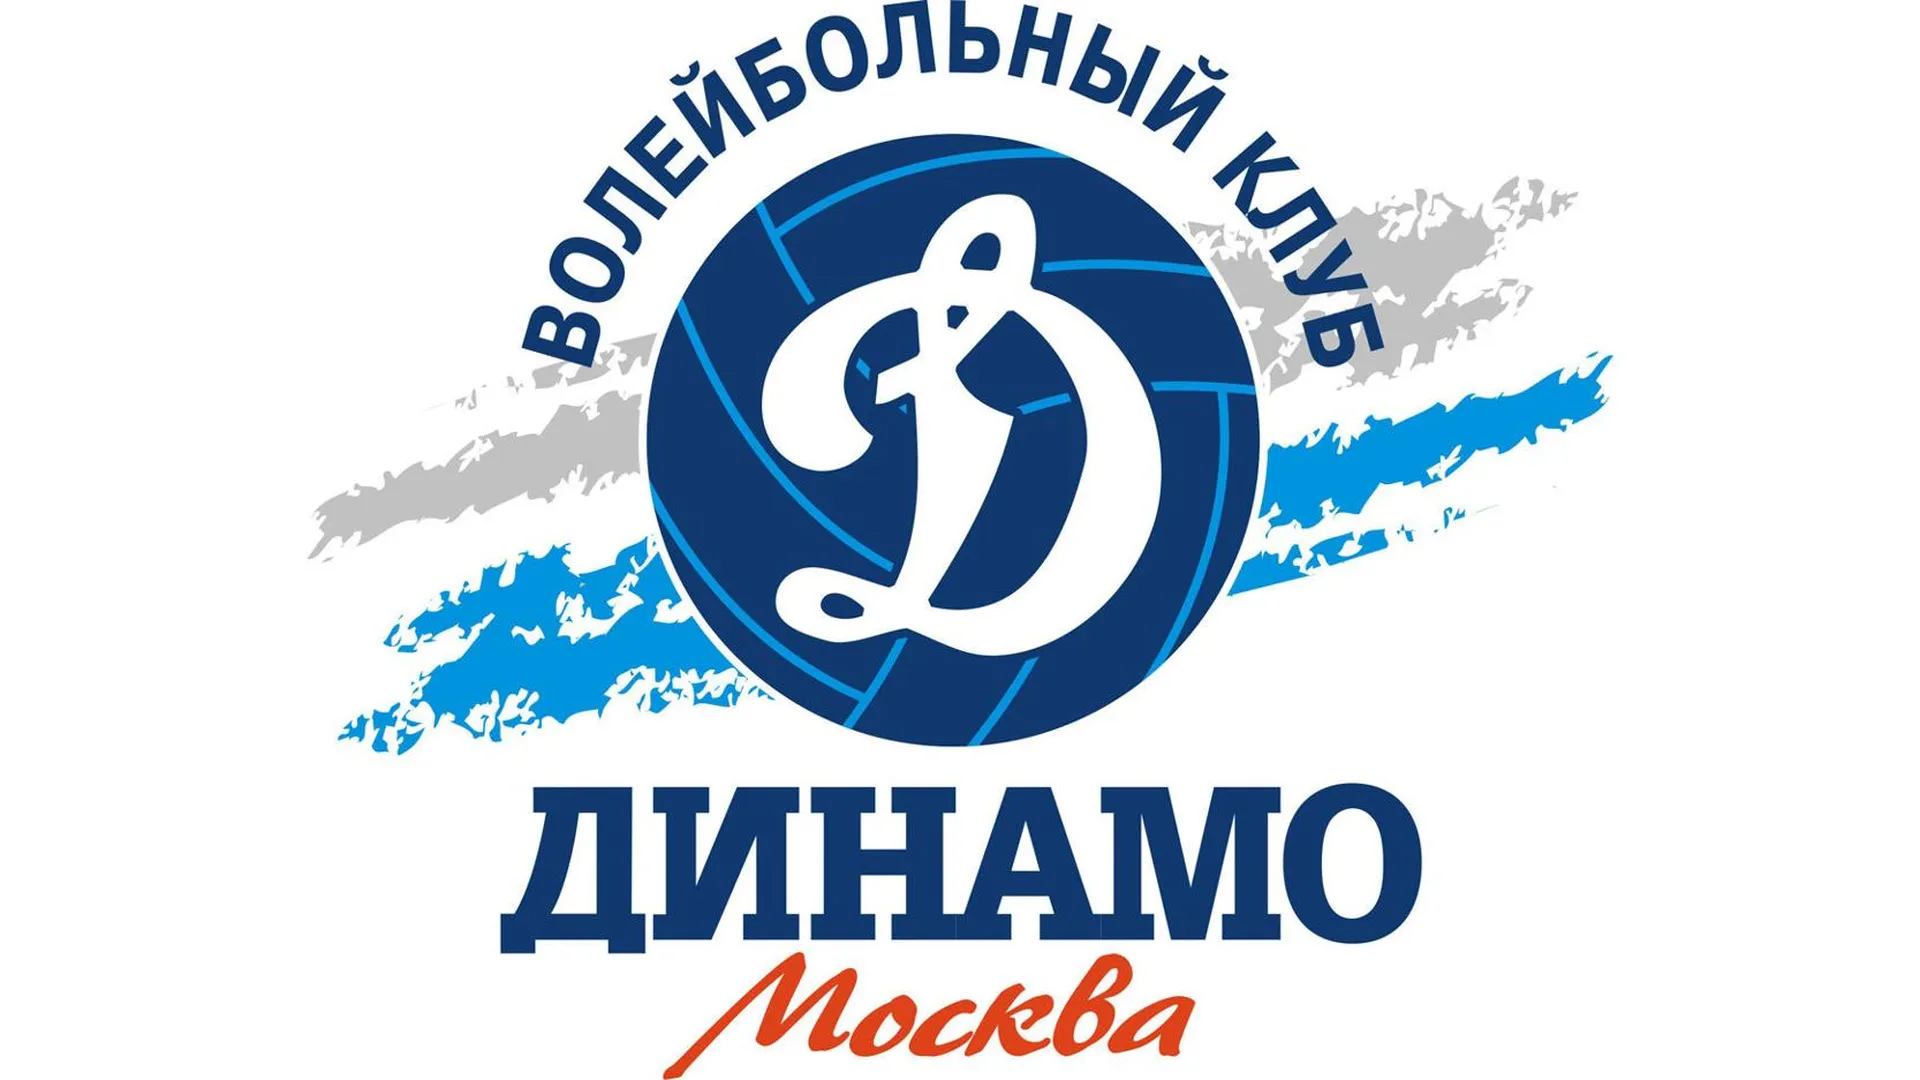 Логотип предоставлен волейбольным клубом "Динамо" (Москва)